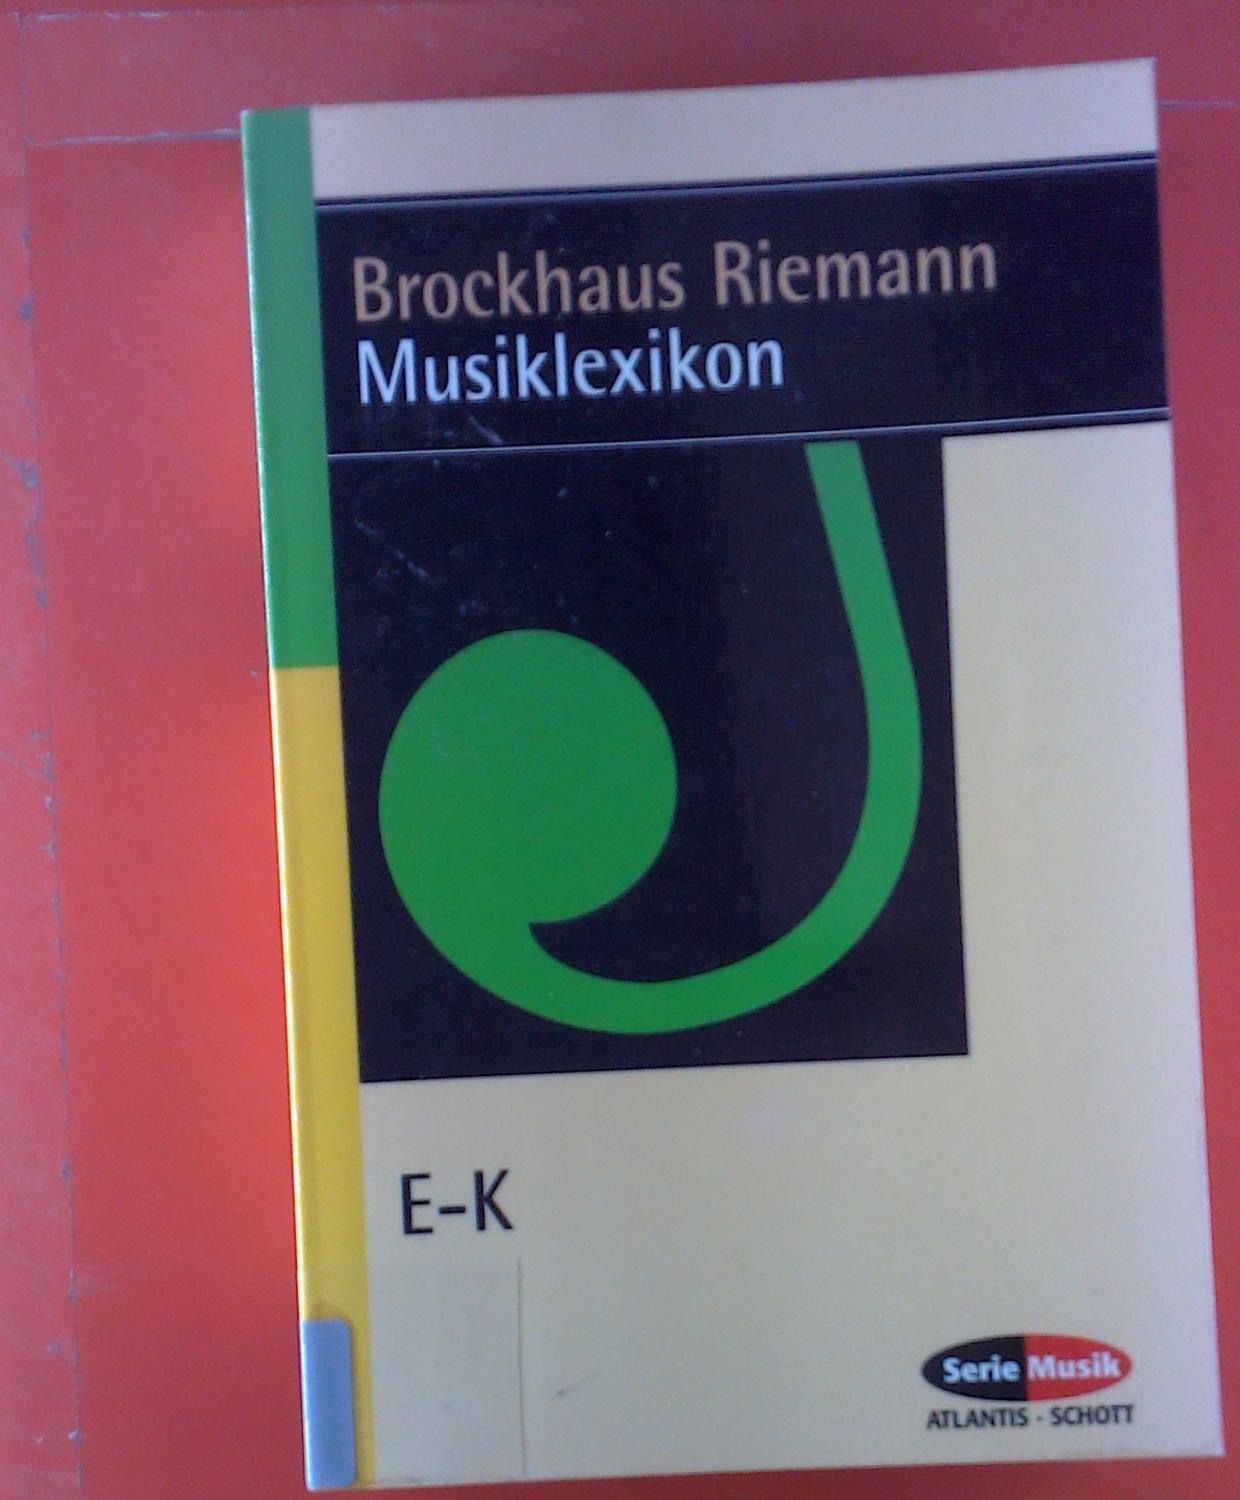 Brockhaus Riemann. Musiklexikon. Zweiter Band, E - K. - Carl Dahlhaus, Hans Heinrich Eggebrecht